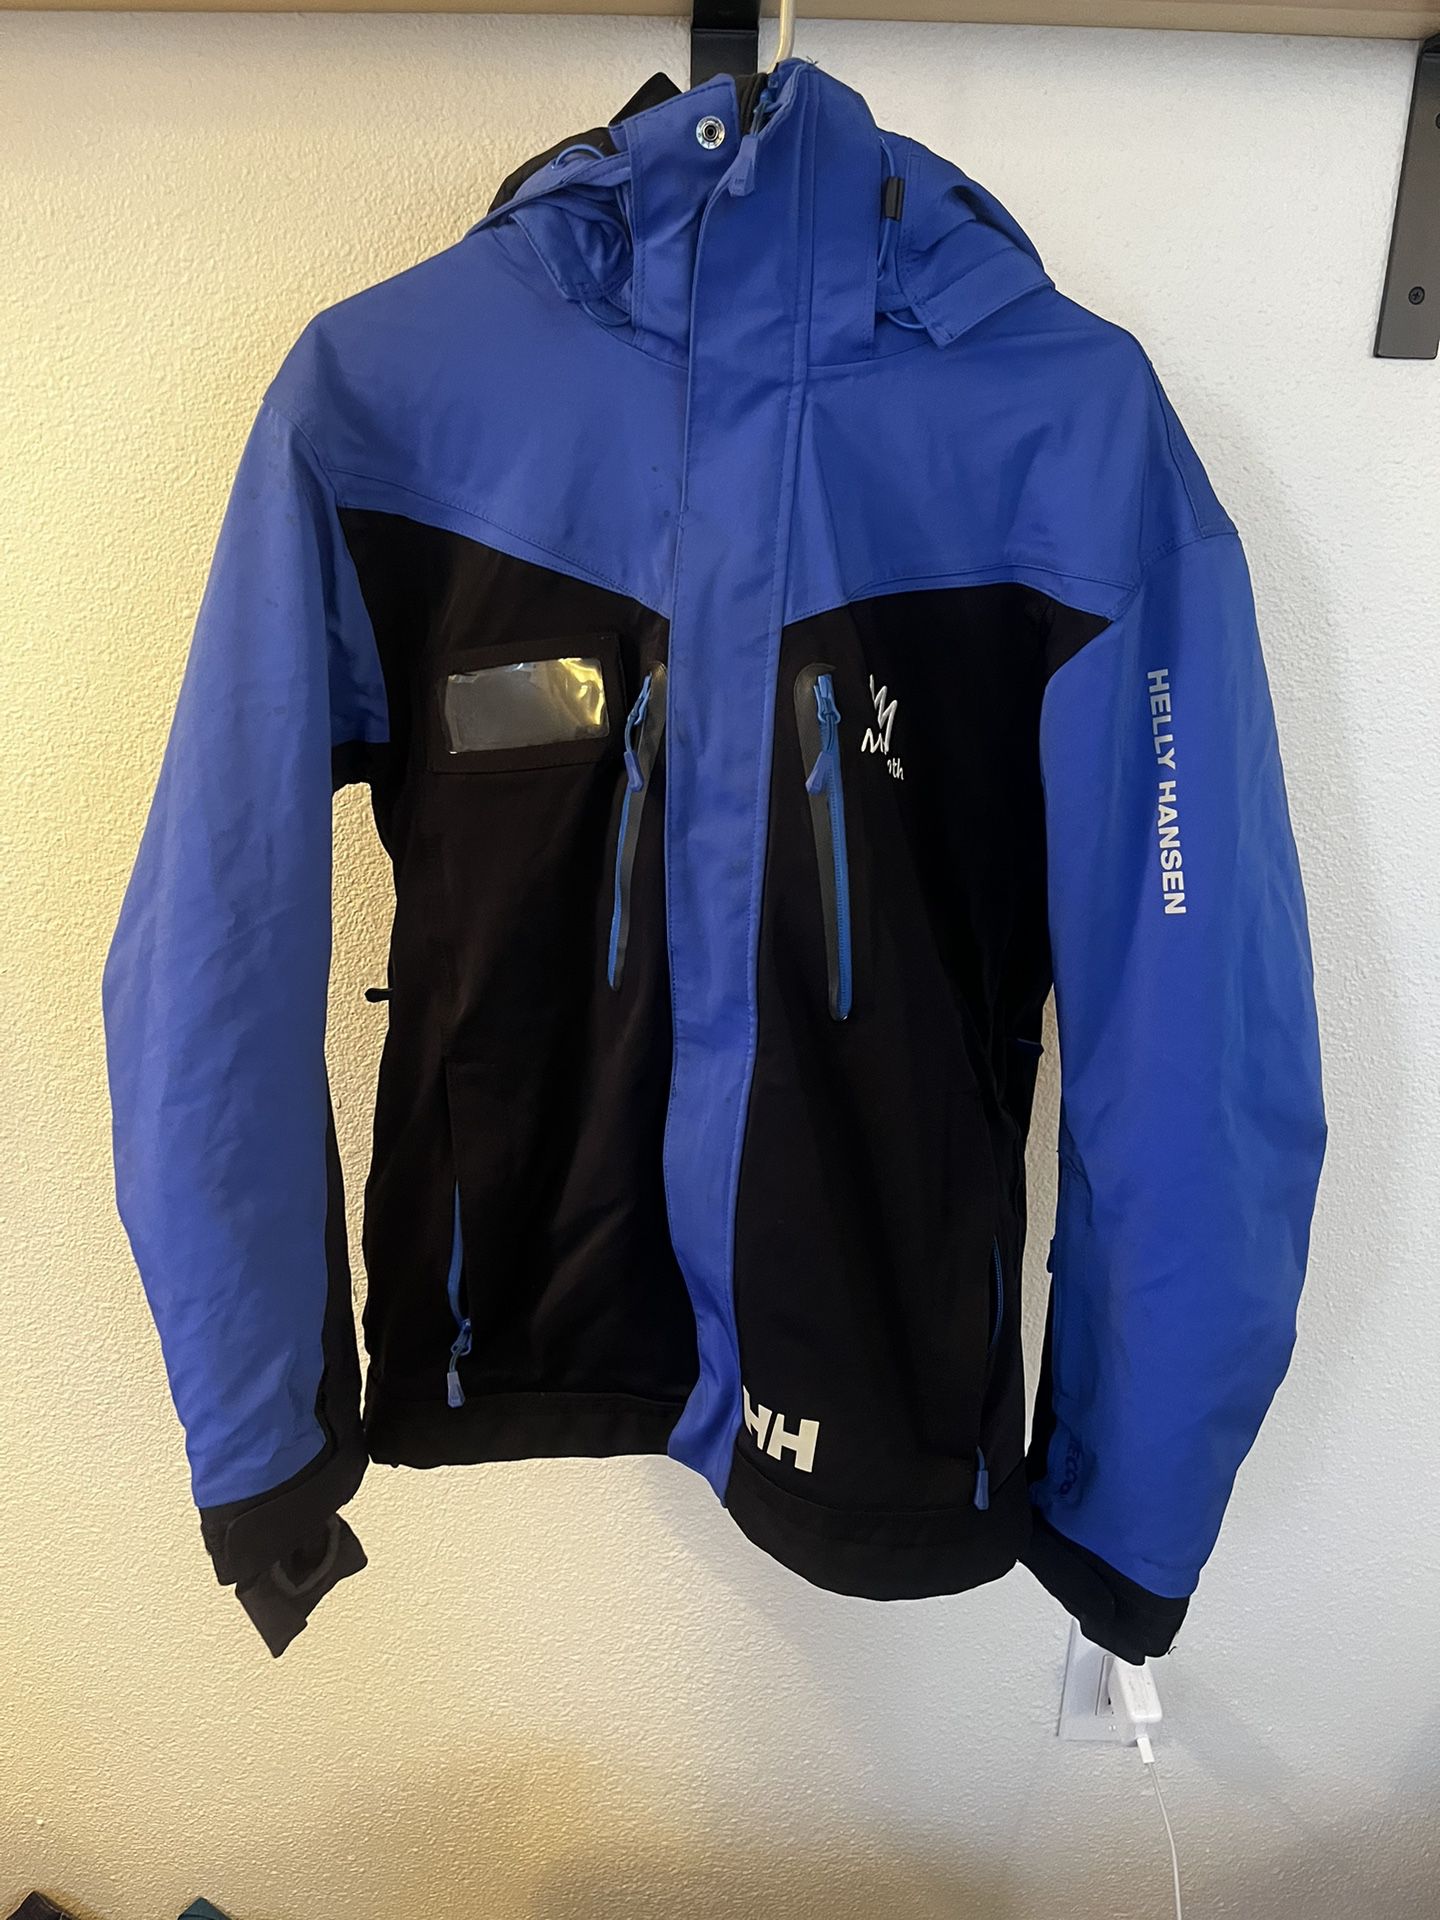 Helly Hansen Men’s Medium Ski jacket